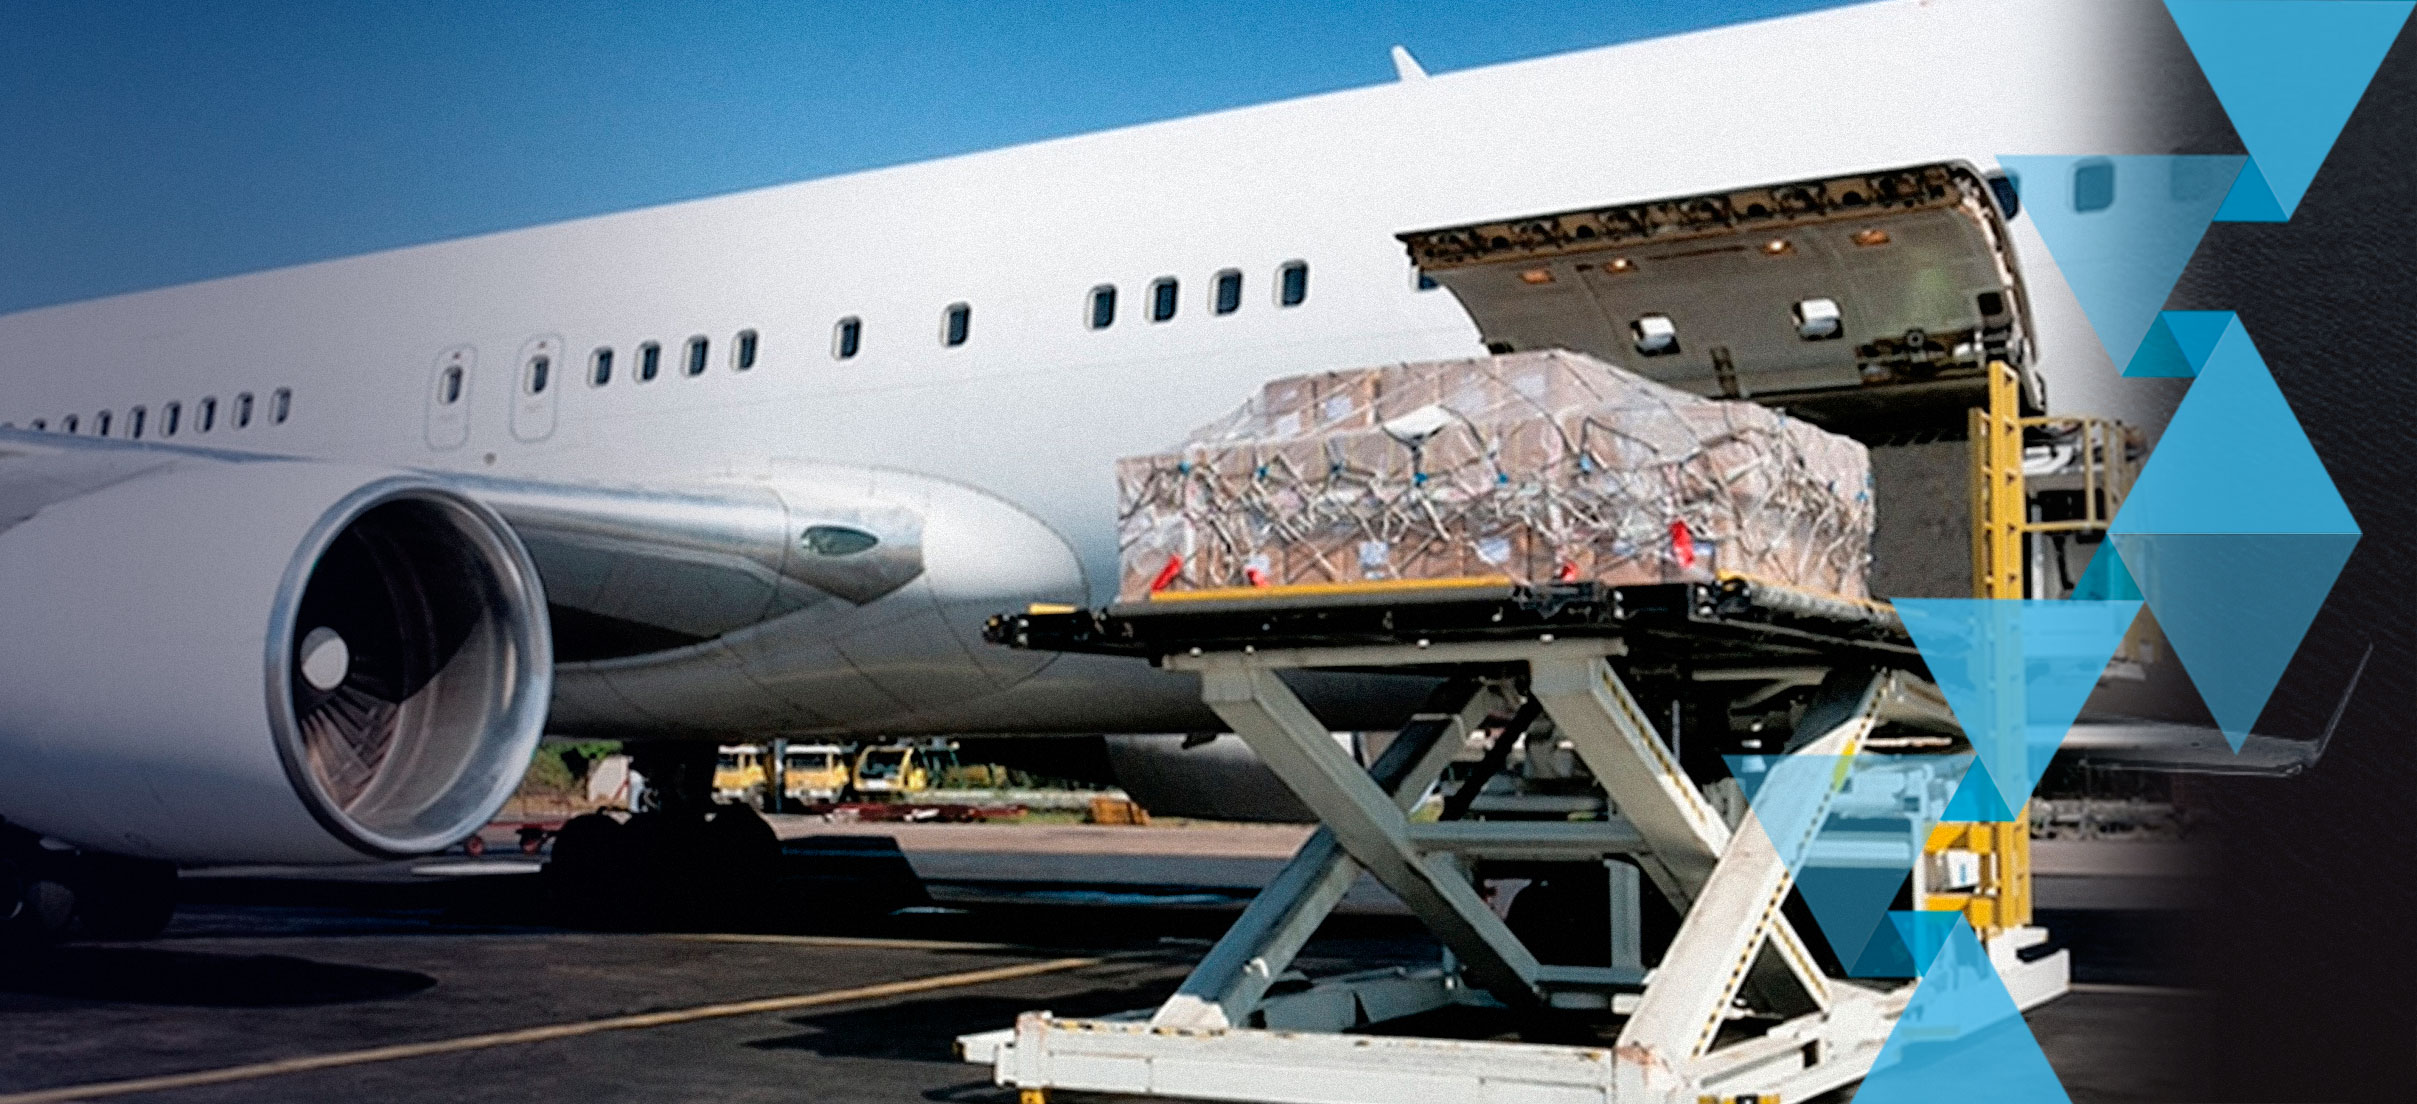 ¿Qué cargas pueden ser transportadas vía aérea?